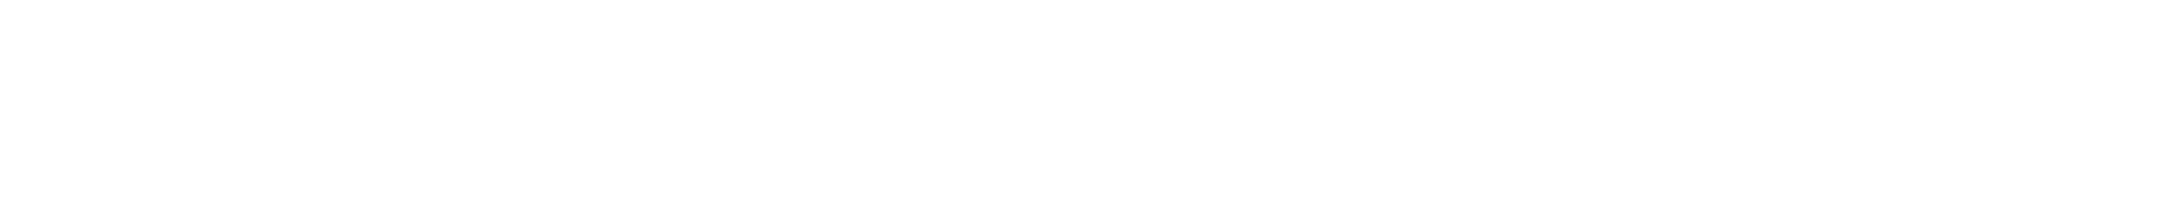 — maximum uptime, minimum administration —